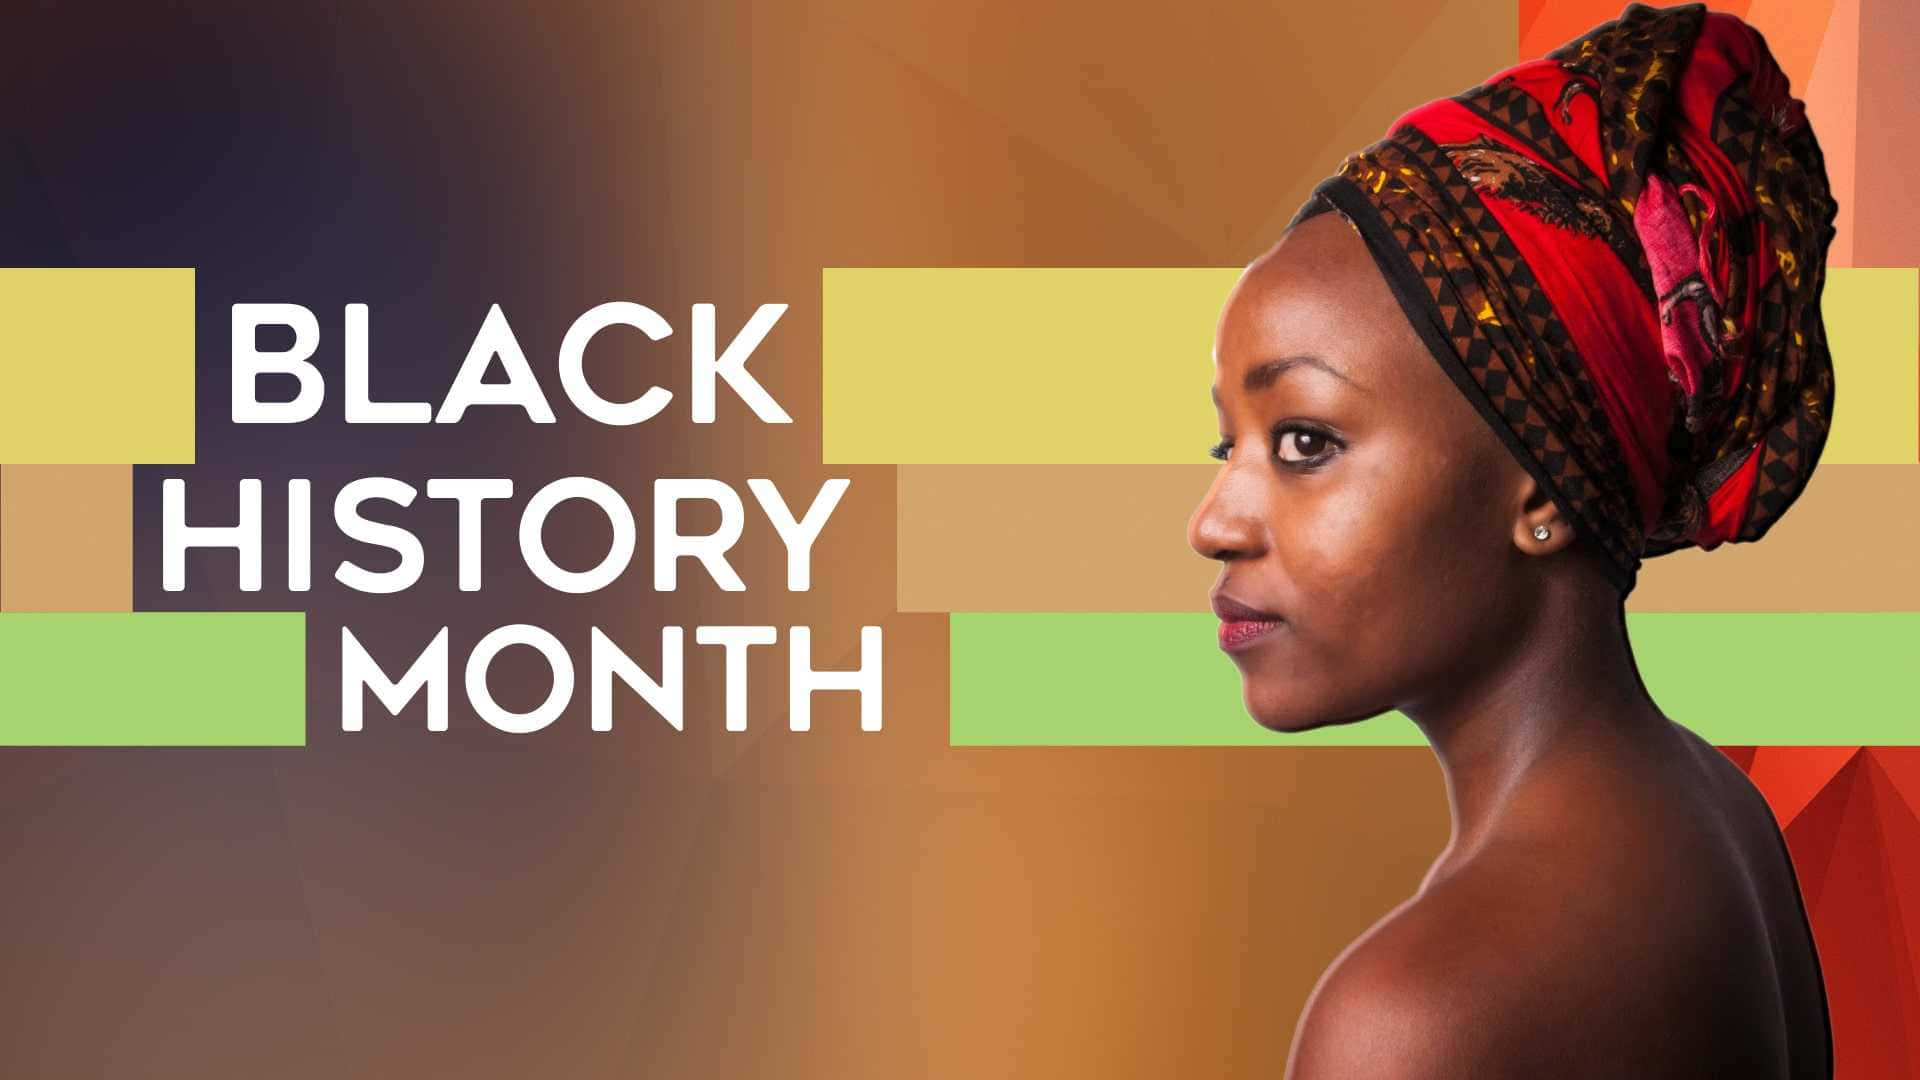 Afrikanischefrau Hintergrund Zum Black History Month